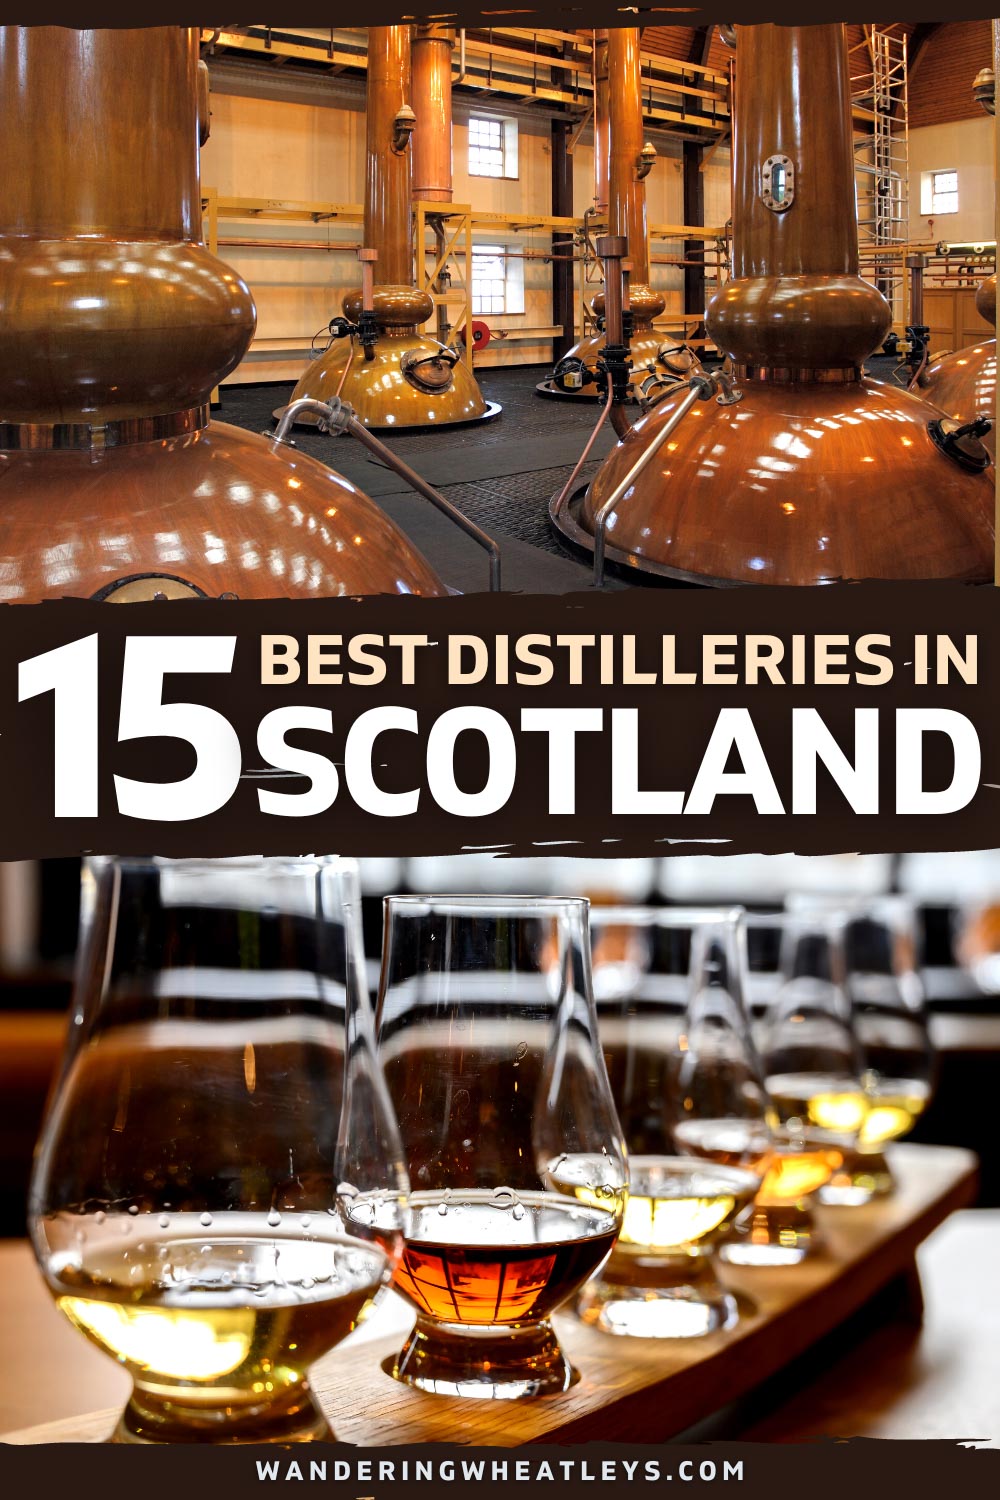 The Best Distilleries in Scotland